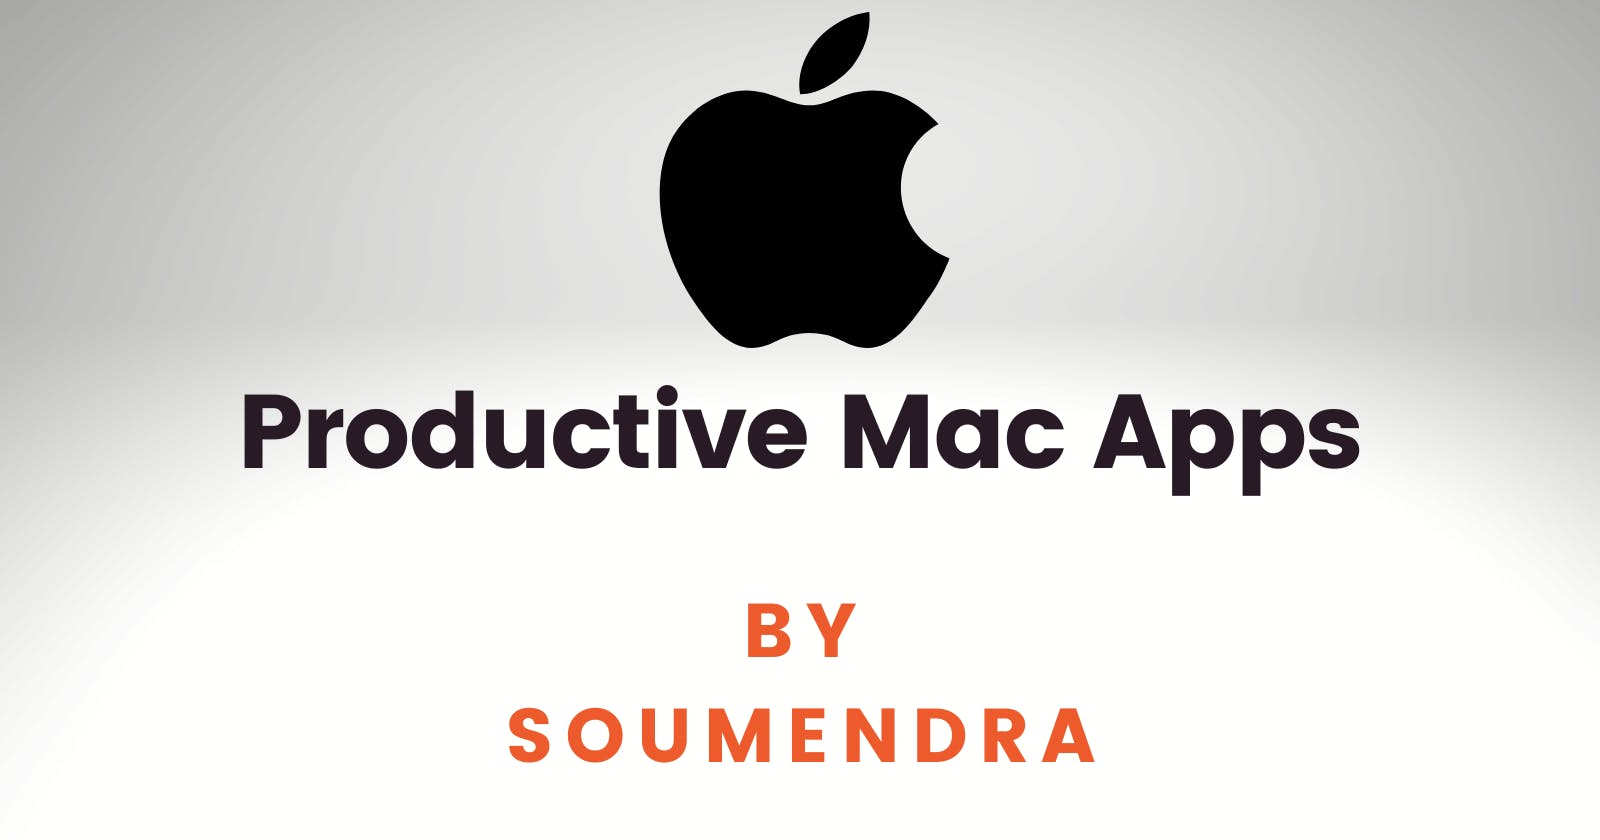 Productive Mac Apps